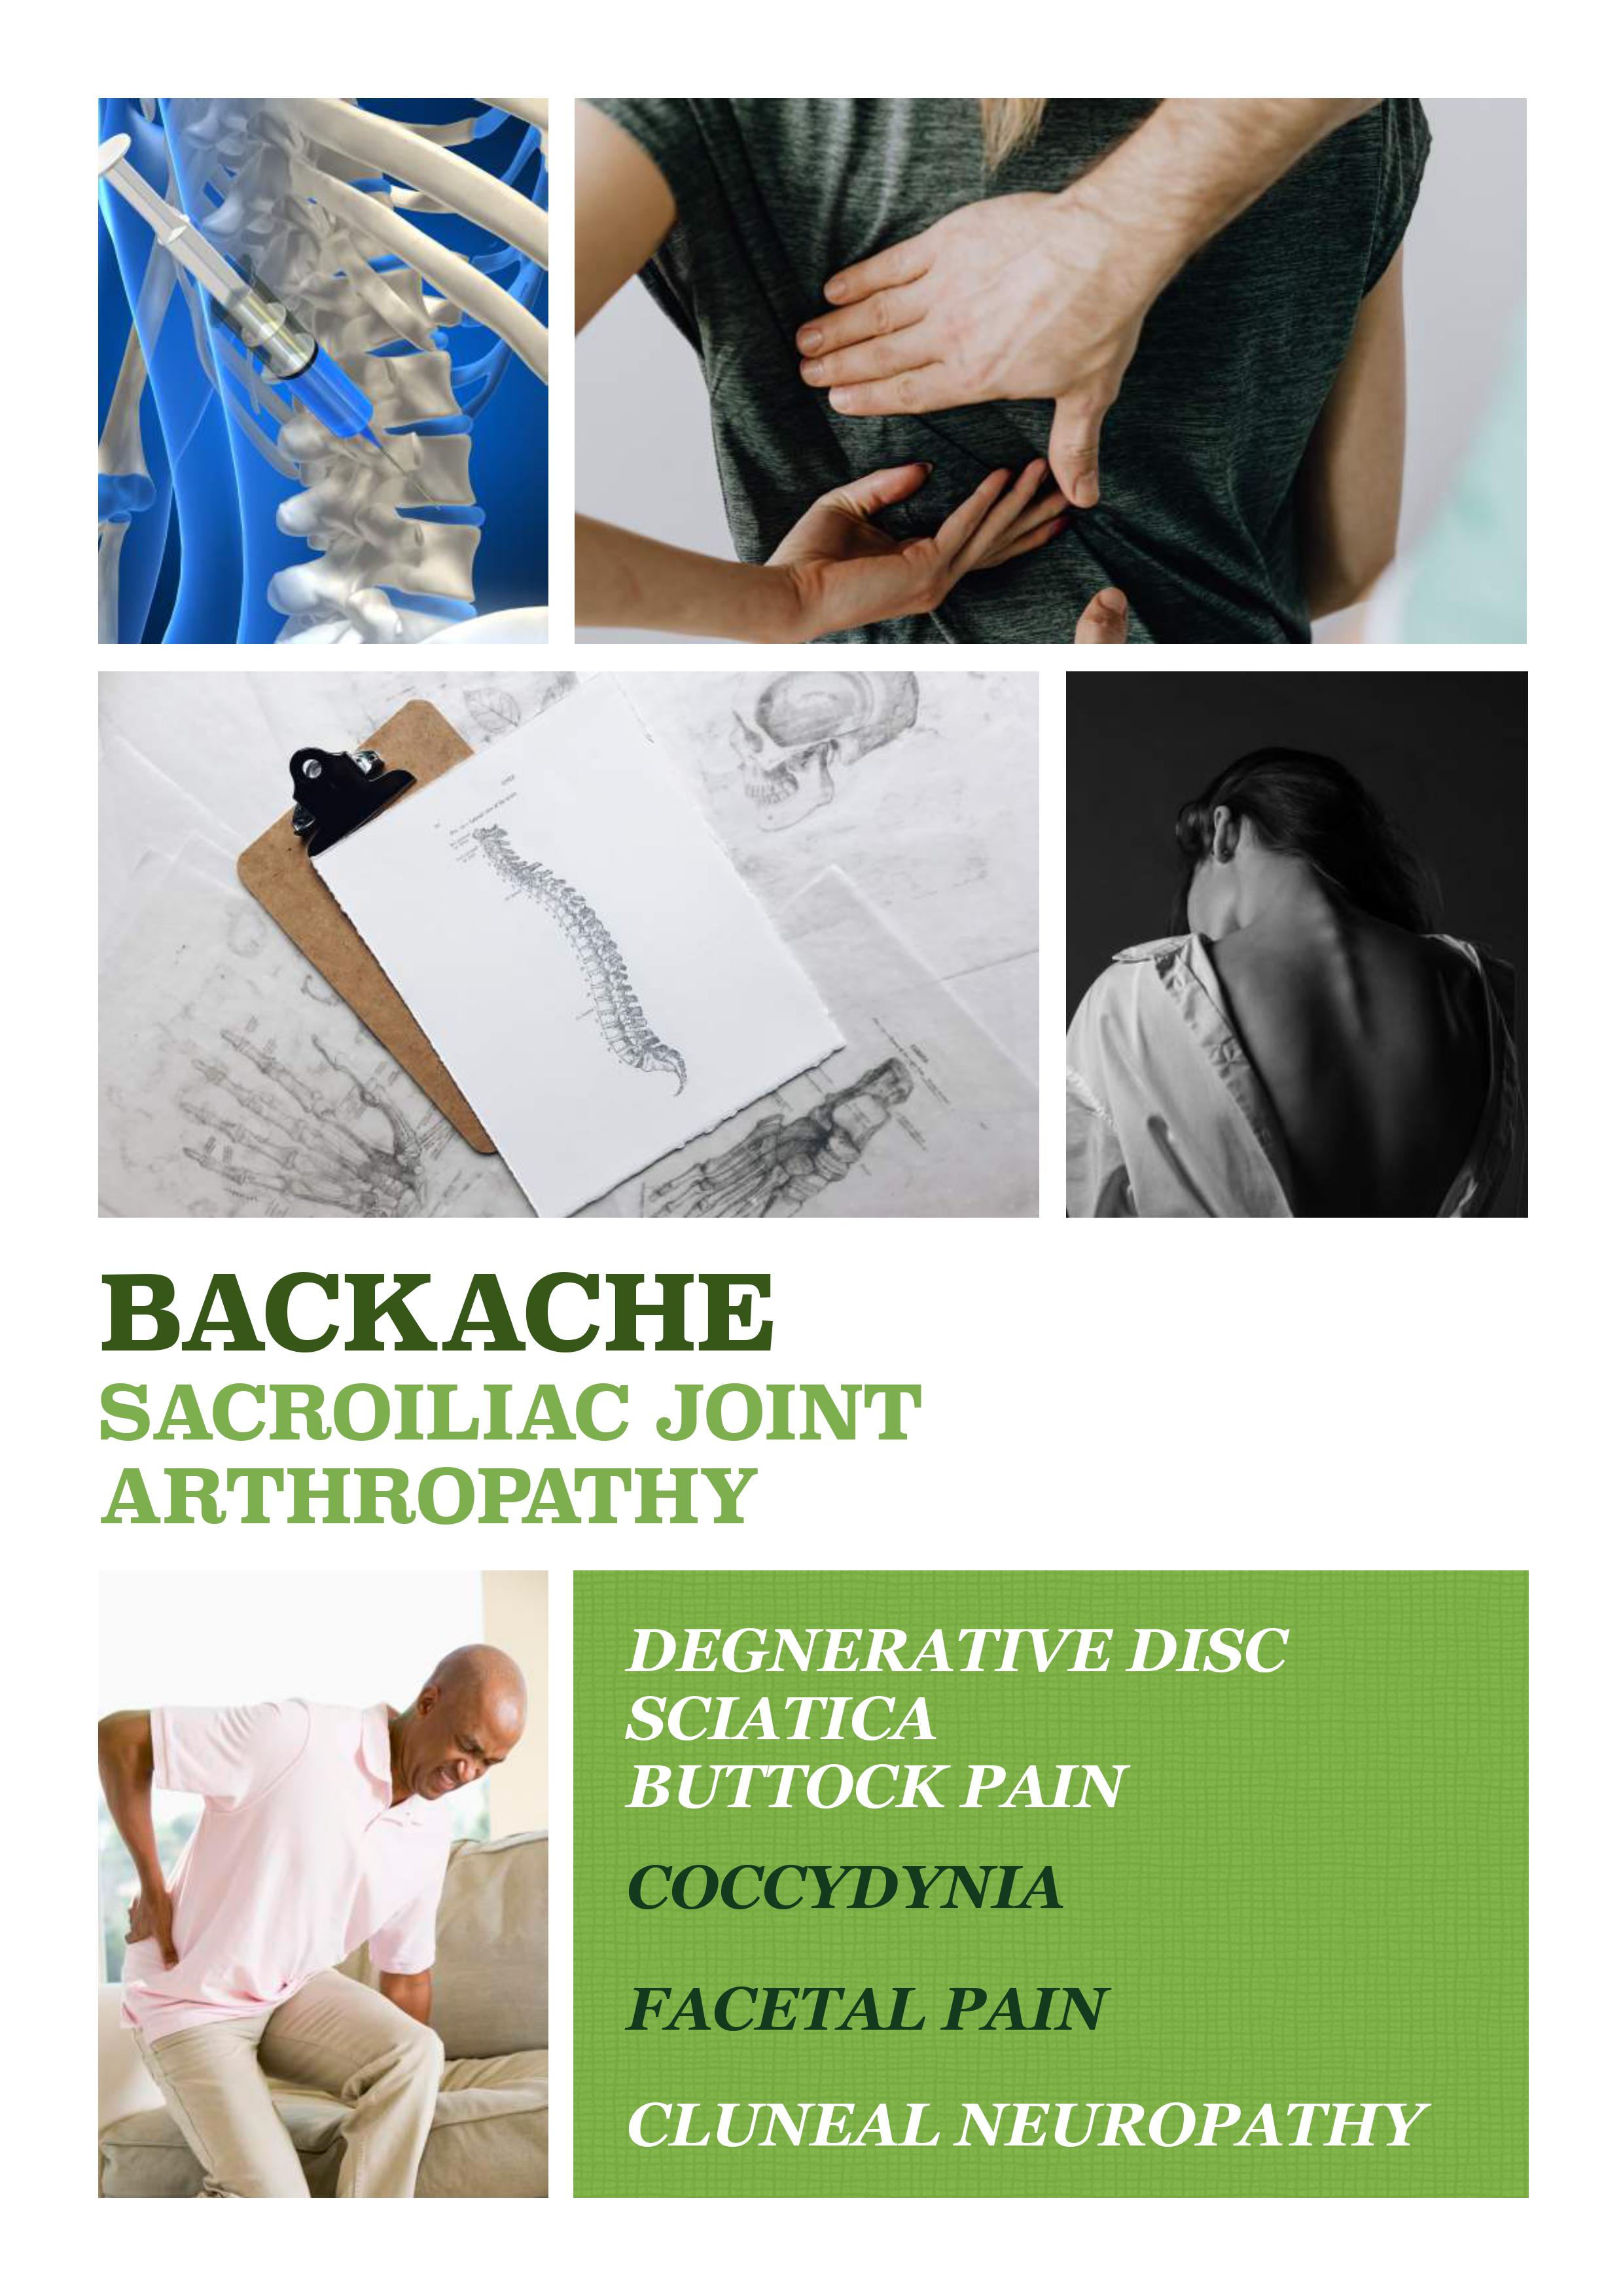 backache